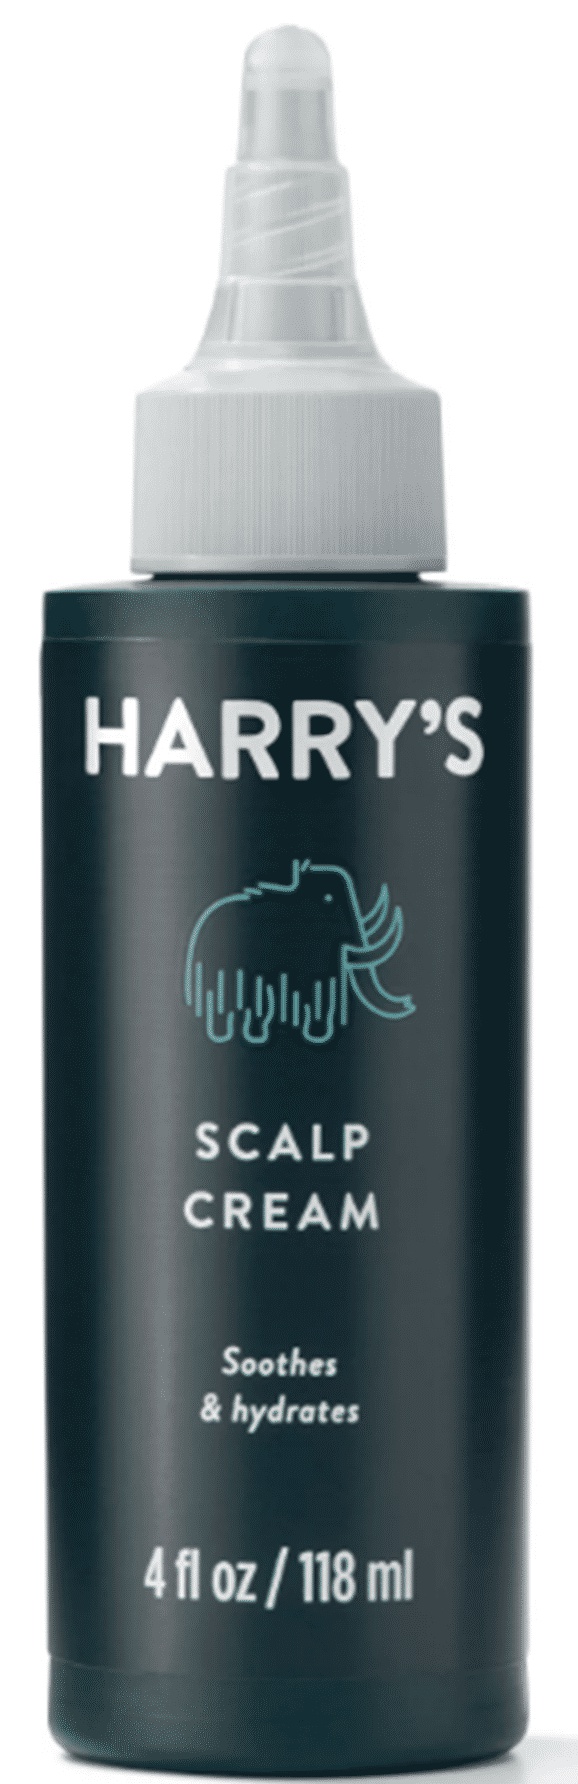 Harry’s Scalp Cream